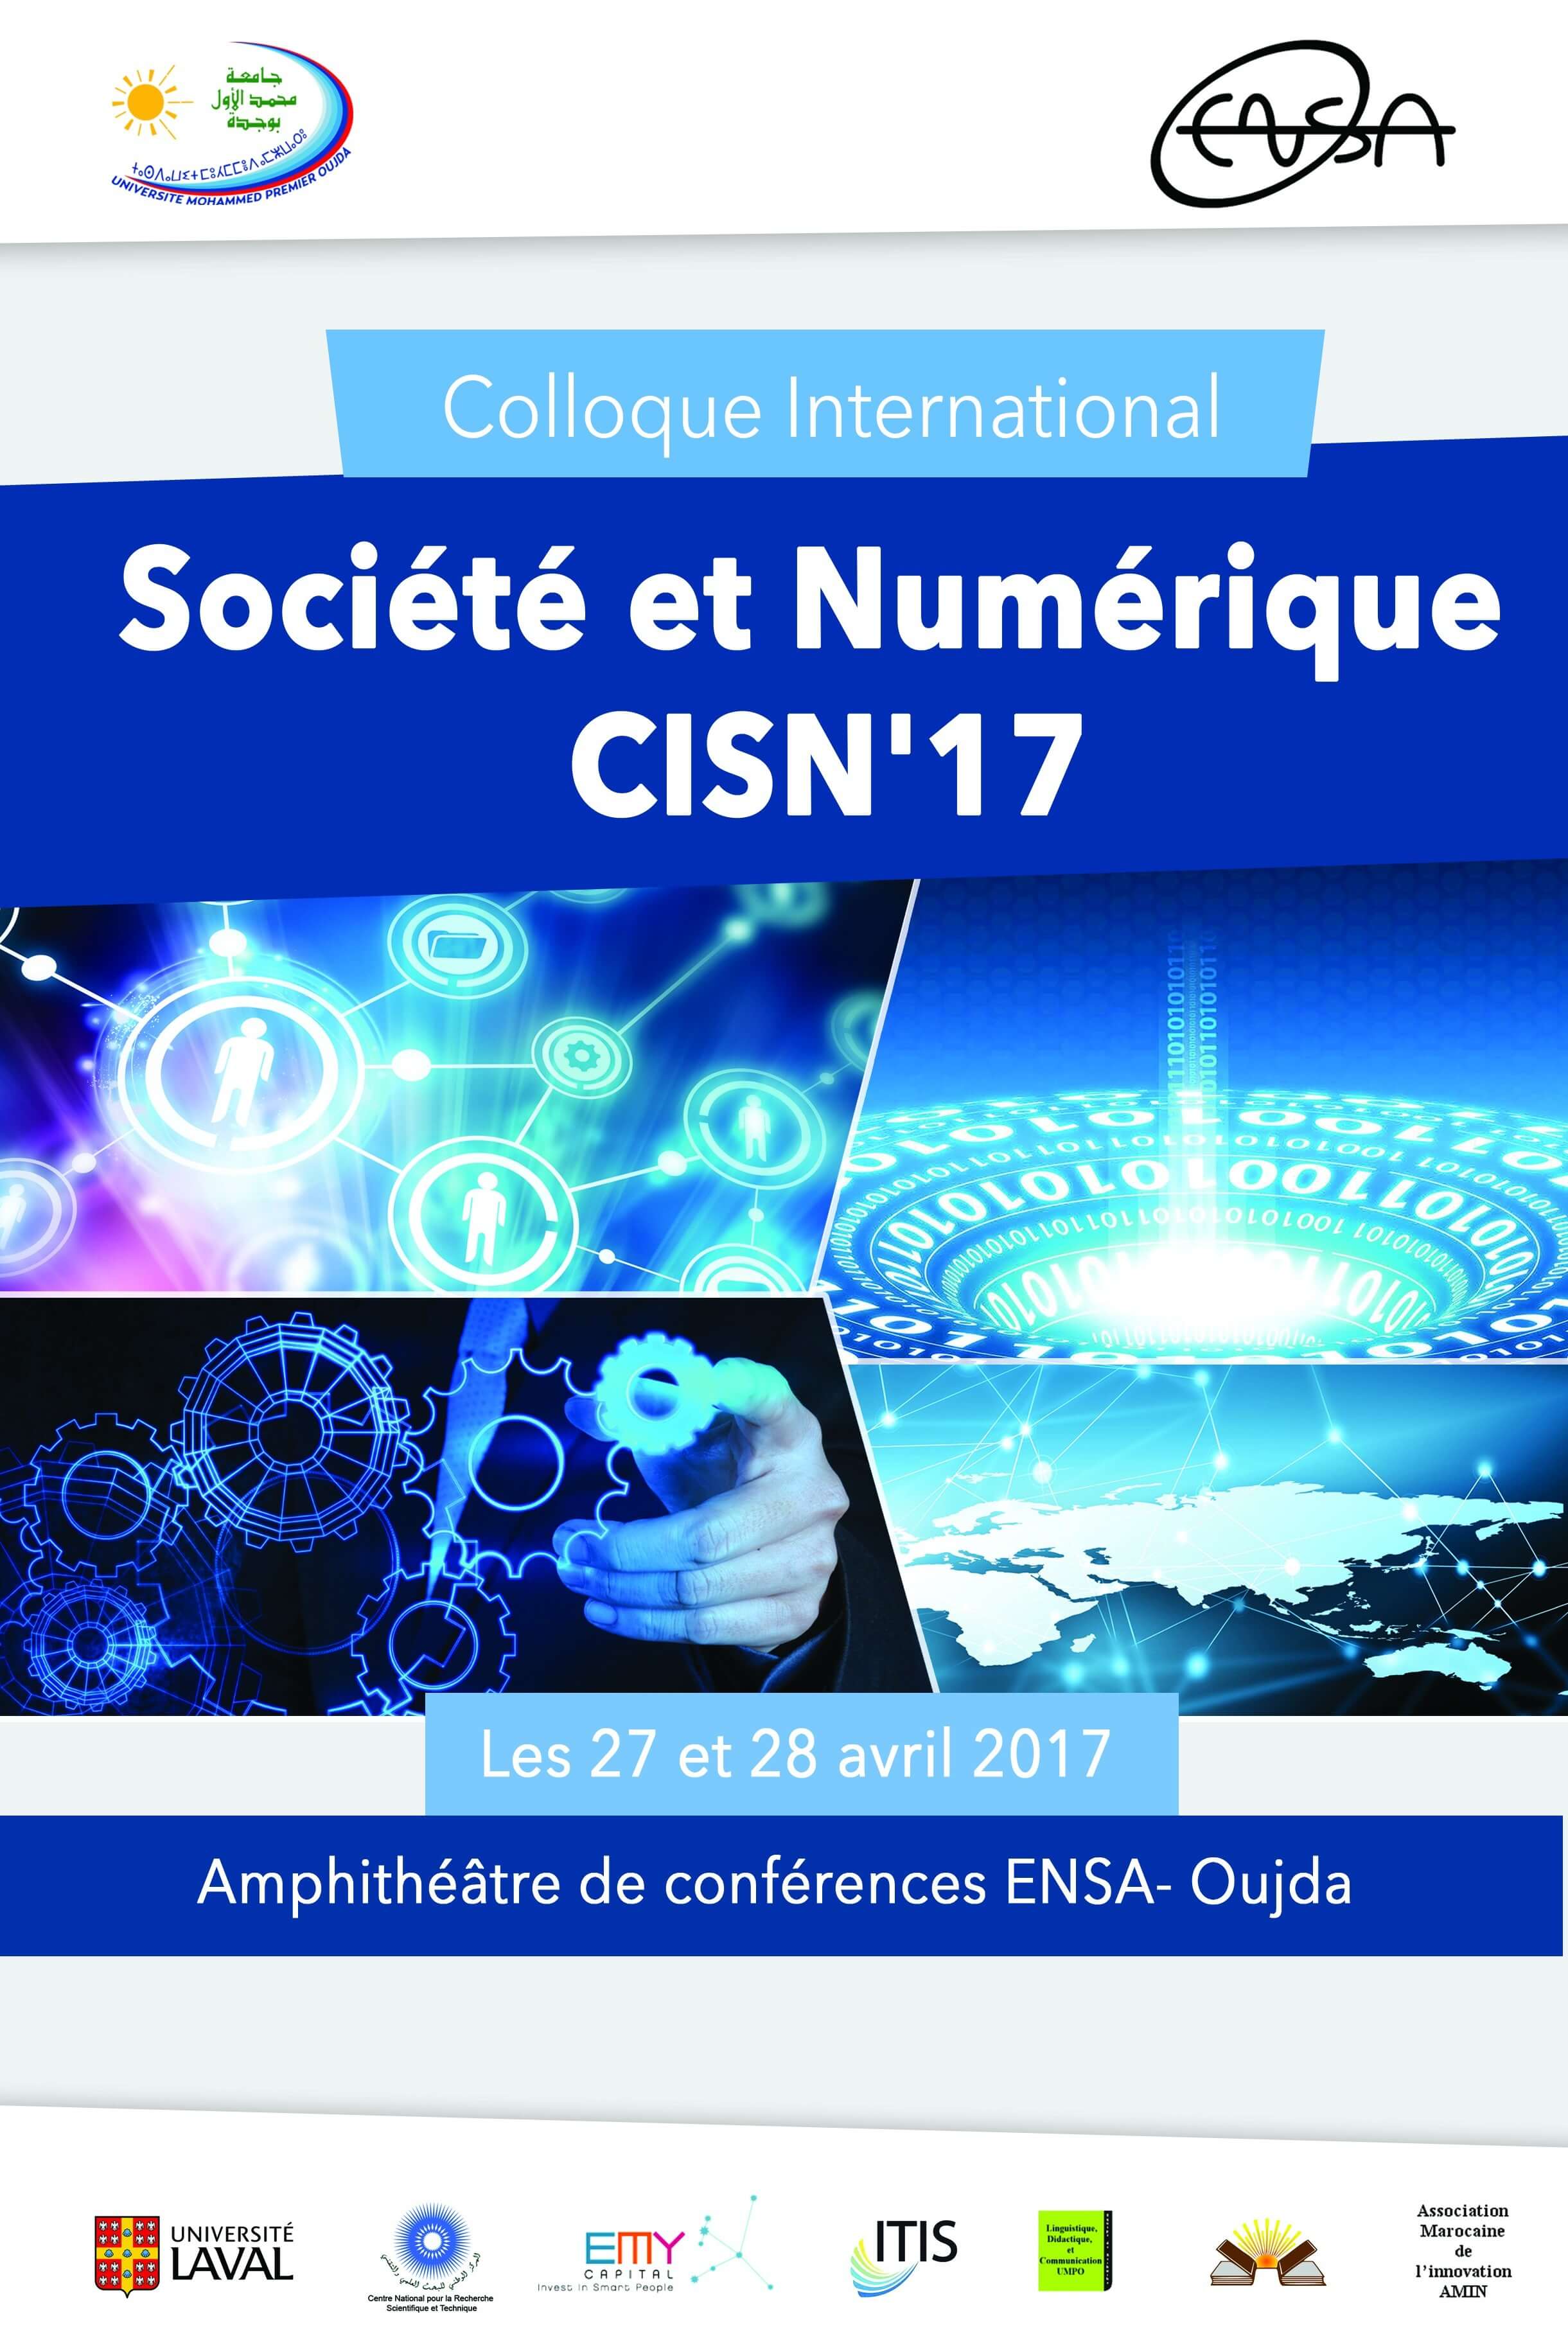 Société et Numérique CISN'17